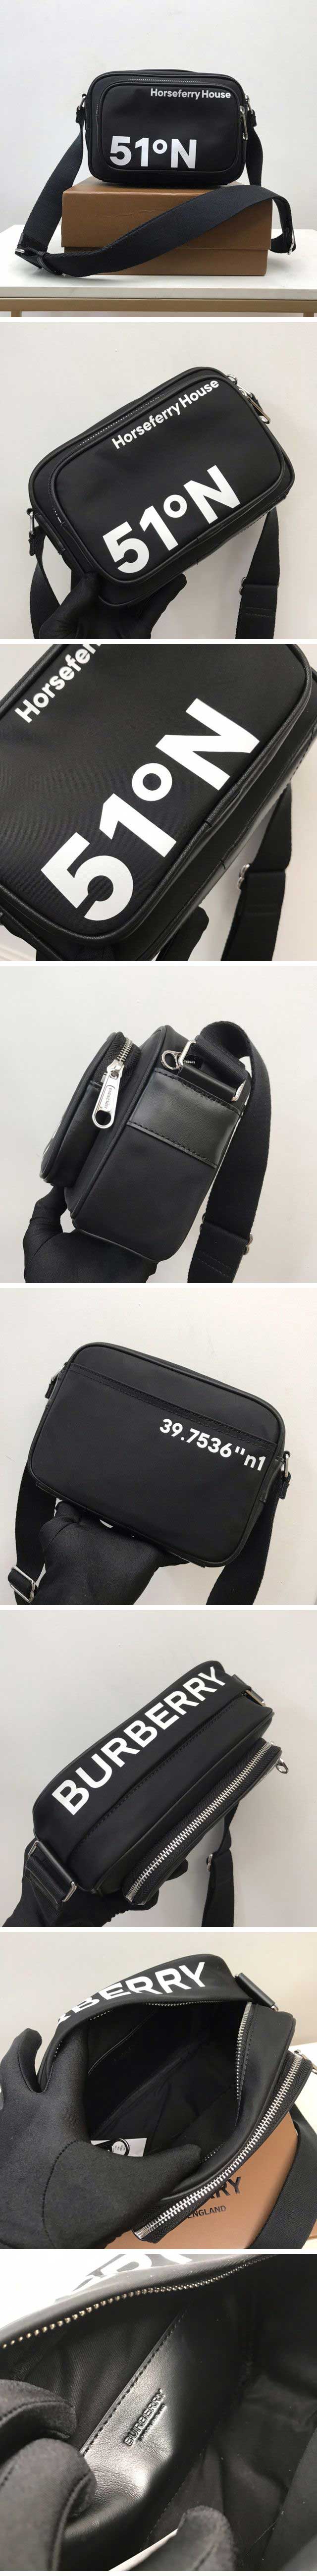 Burberry Coordinate Print Shoulder Bag バーバリー コーディネイト プリント ショルダーバッグ